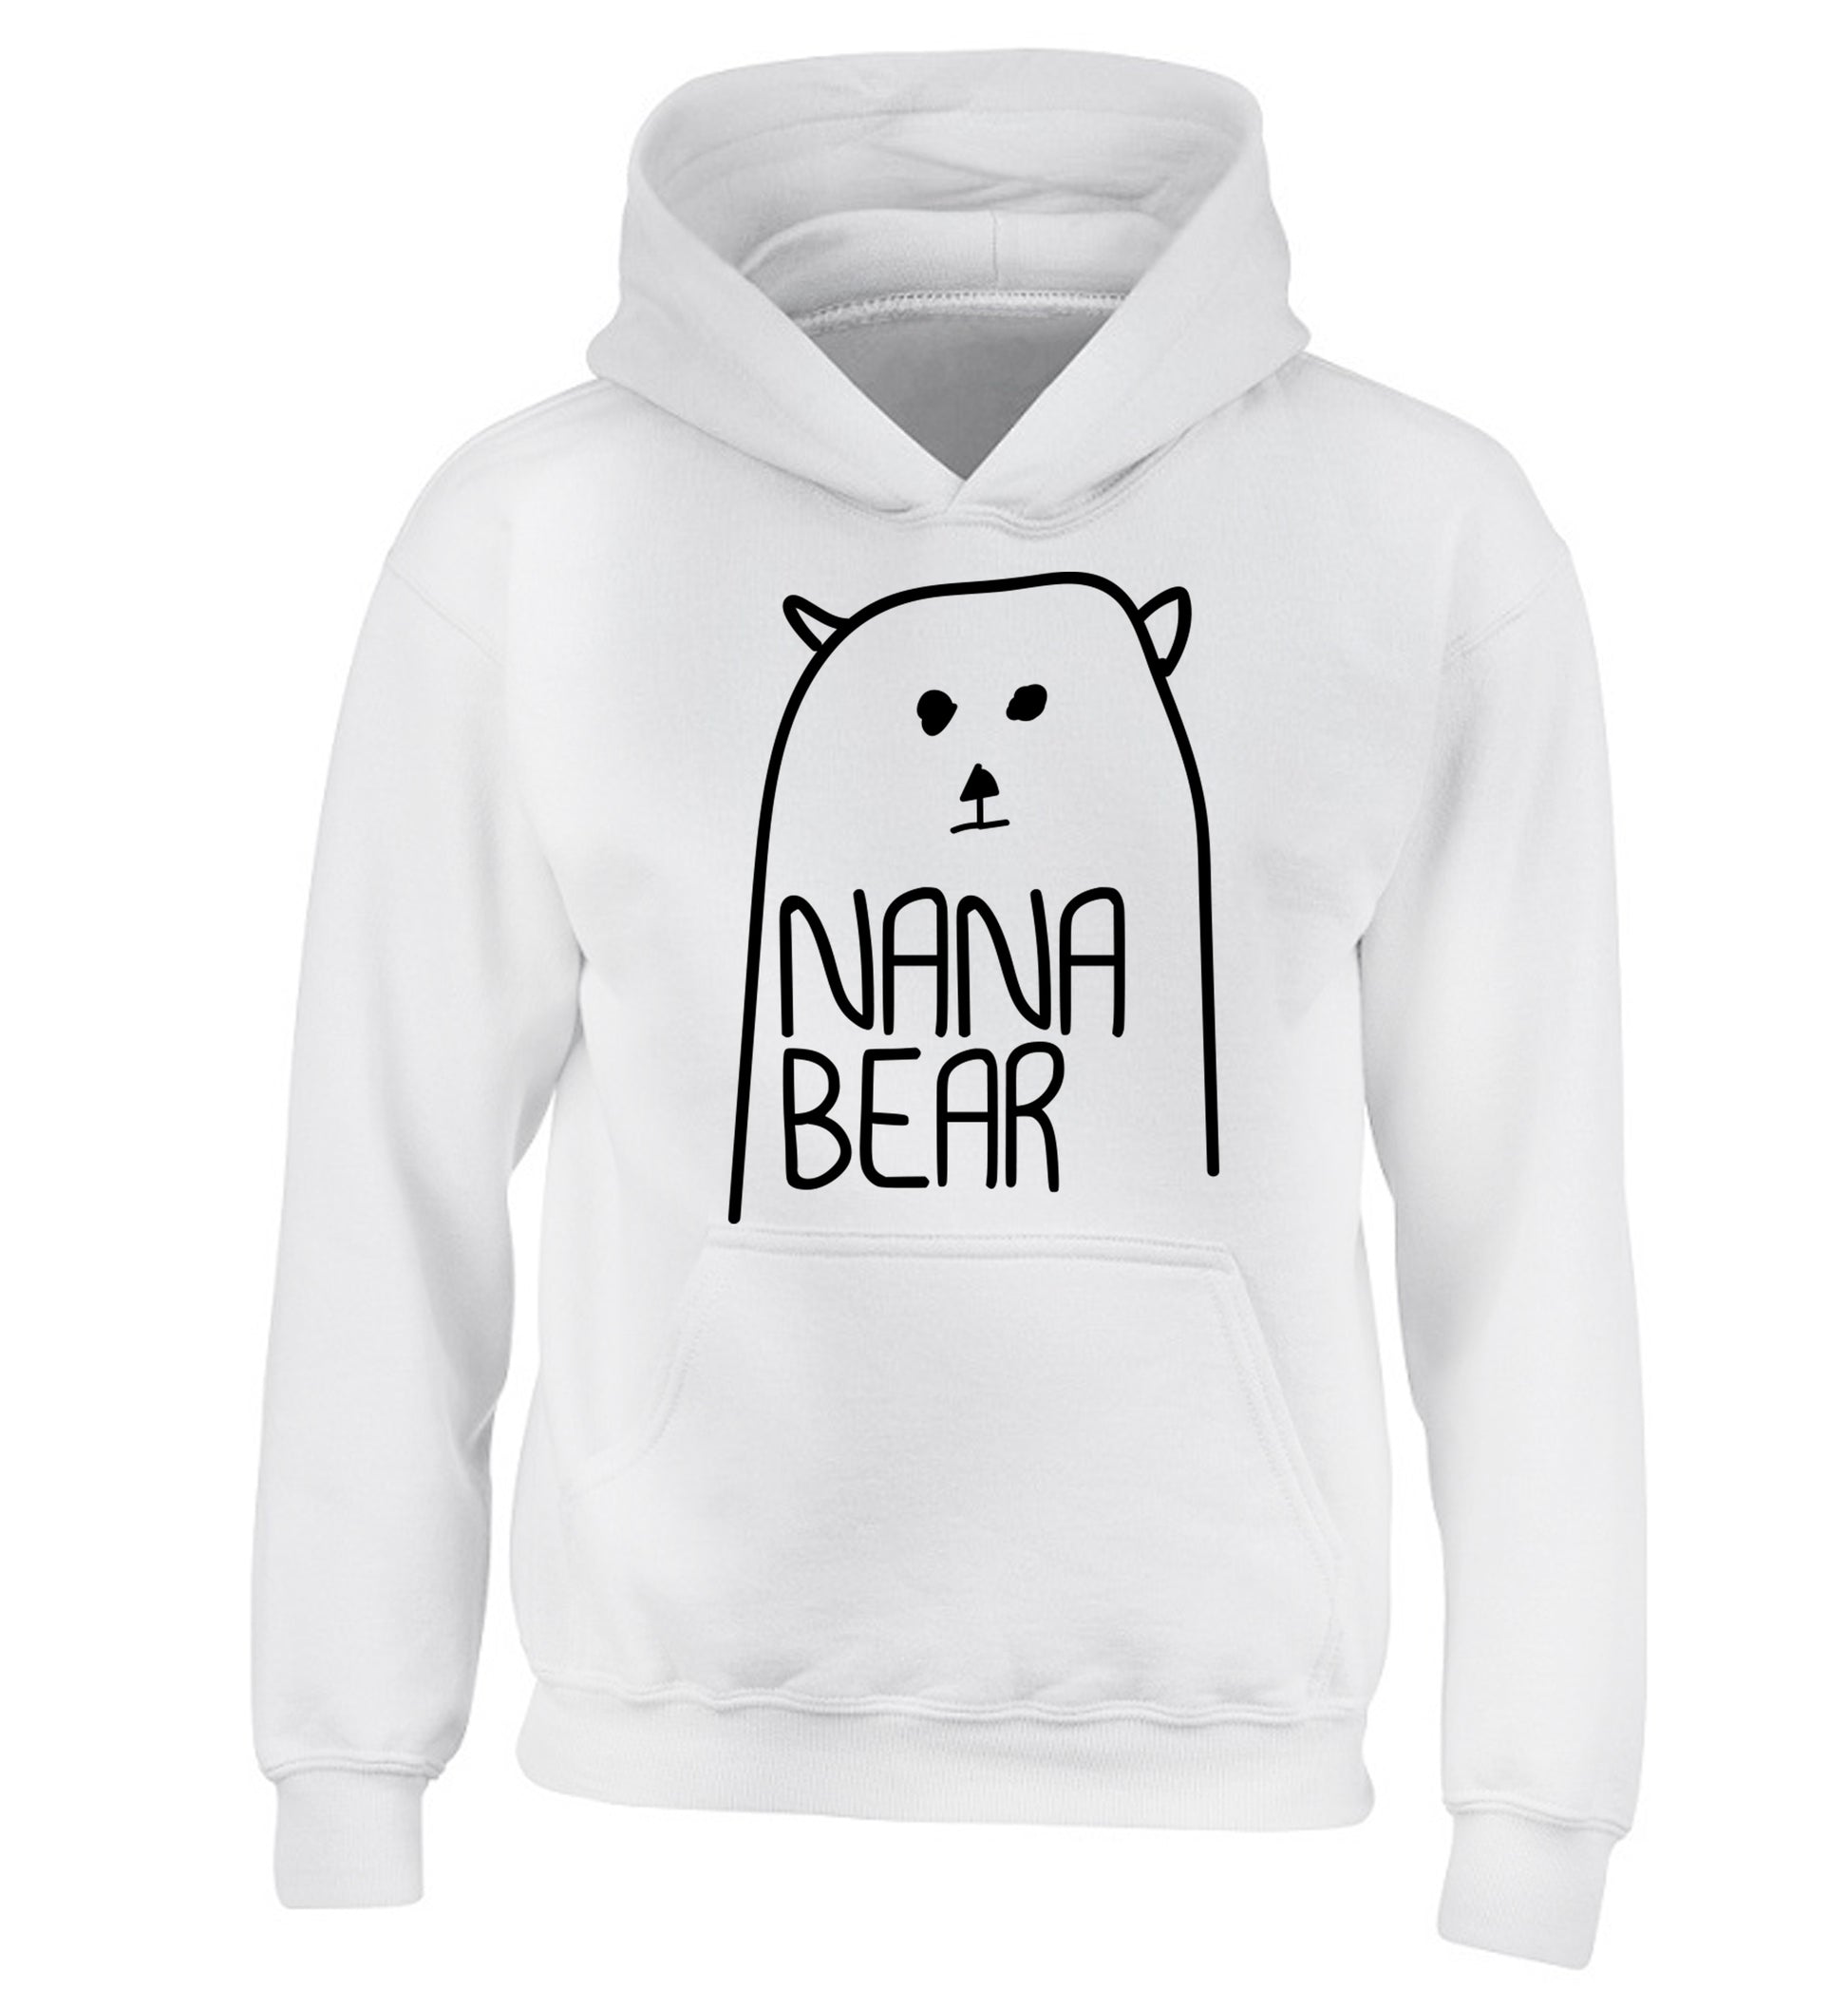 Nana bear children's white hoodie 12-13 Years